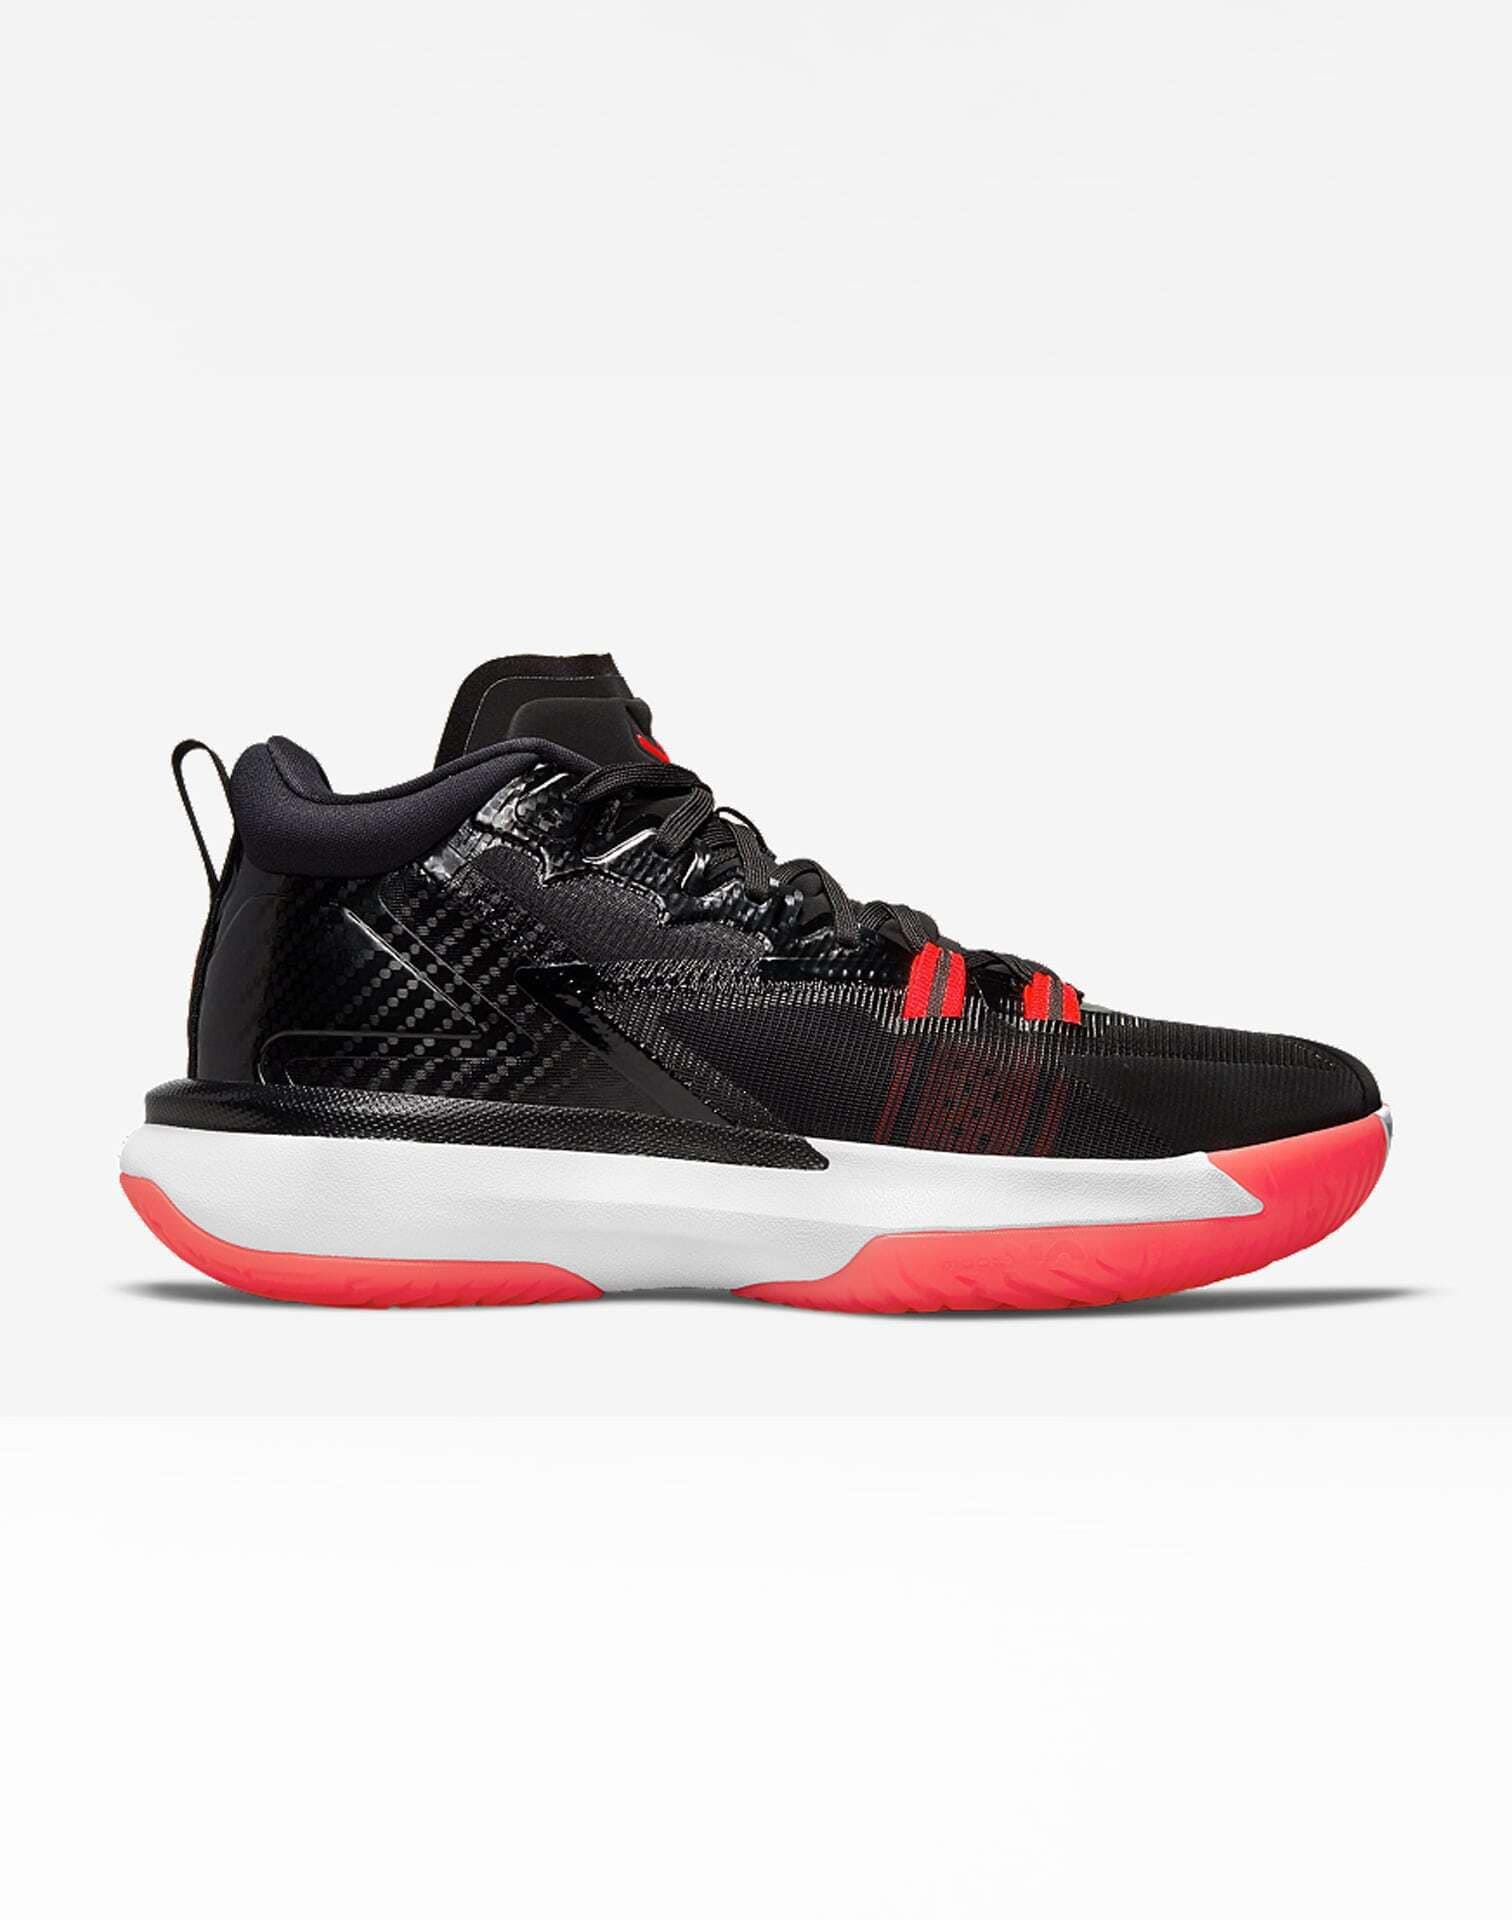 Jordan Zion 1 'Bloodline' $91.18 Free Shipping - Sneaker Steal